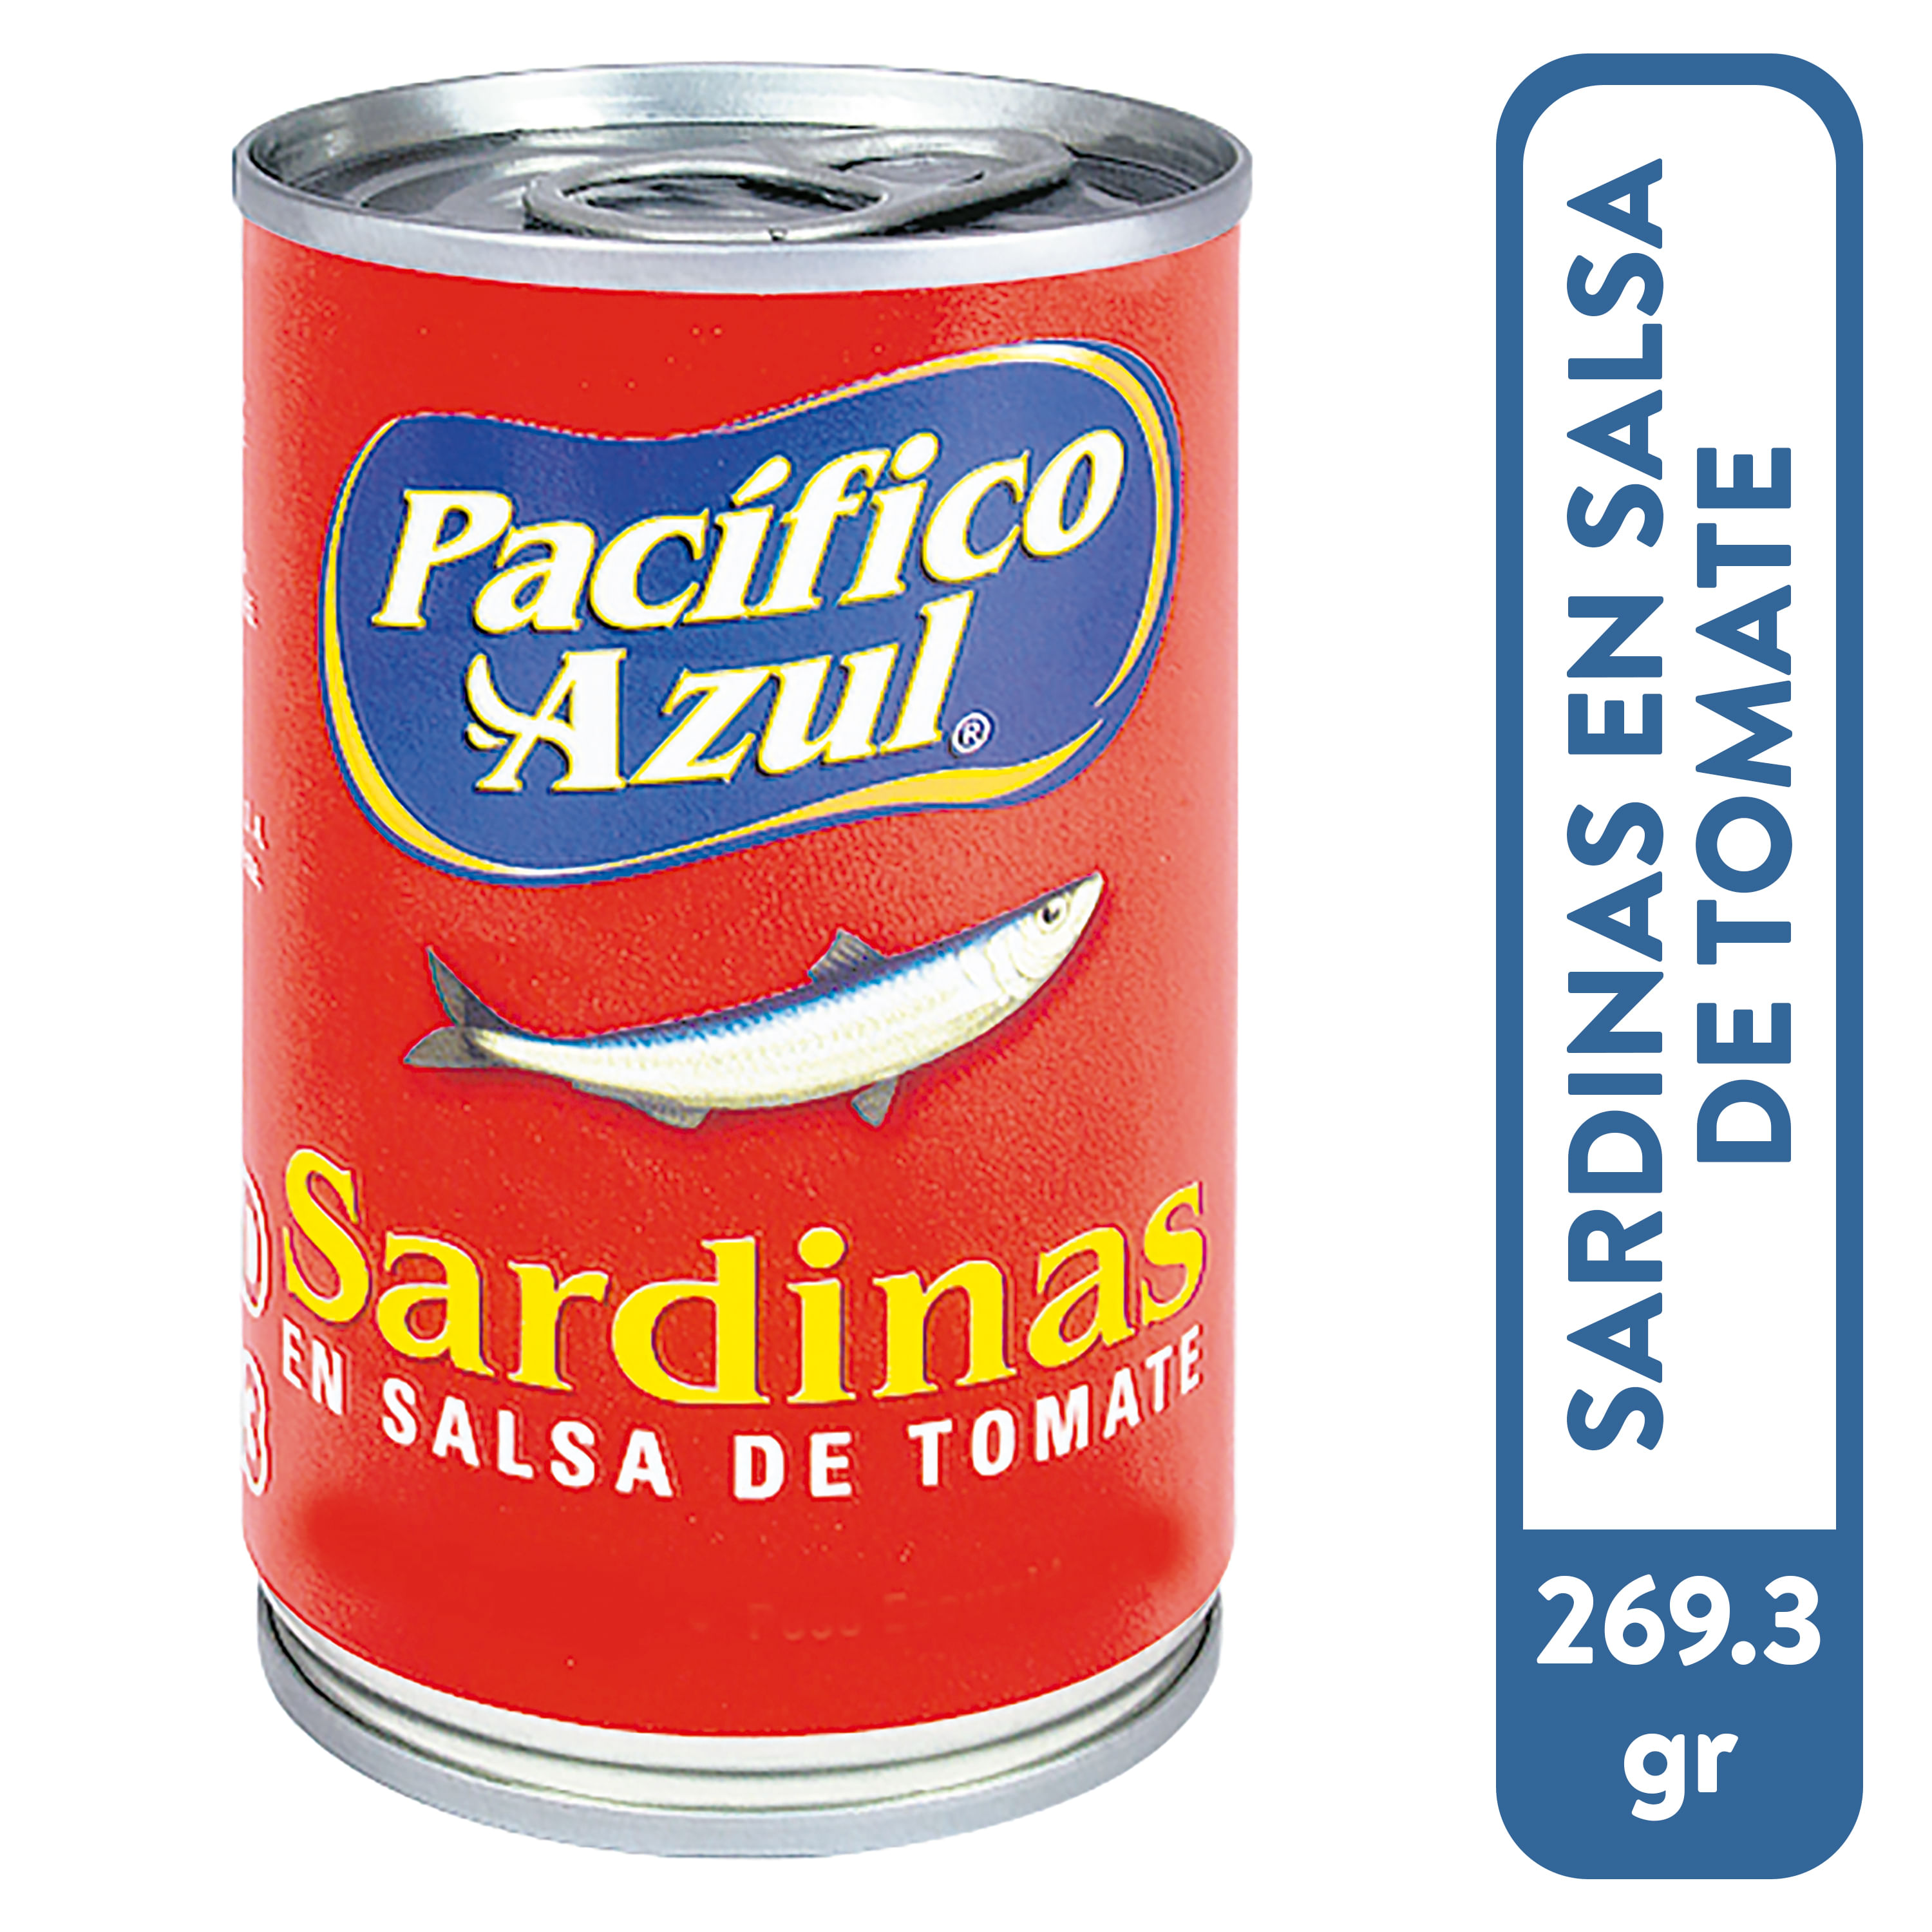 Sardina-Pacifico-Azul-en-Salsa-de-Tomate-Dulce-160gr-1-33456